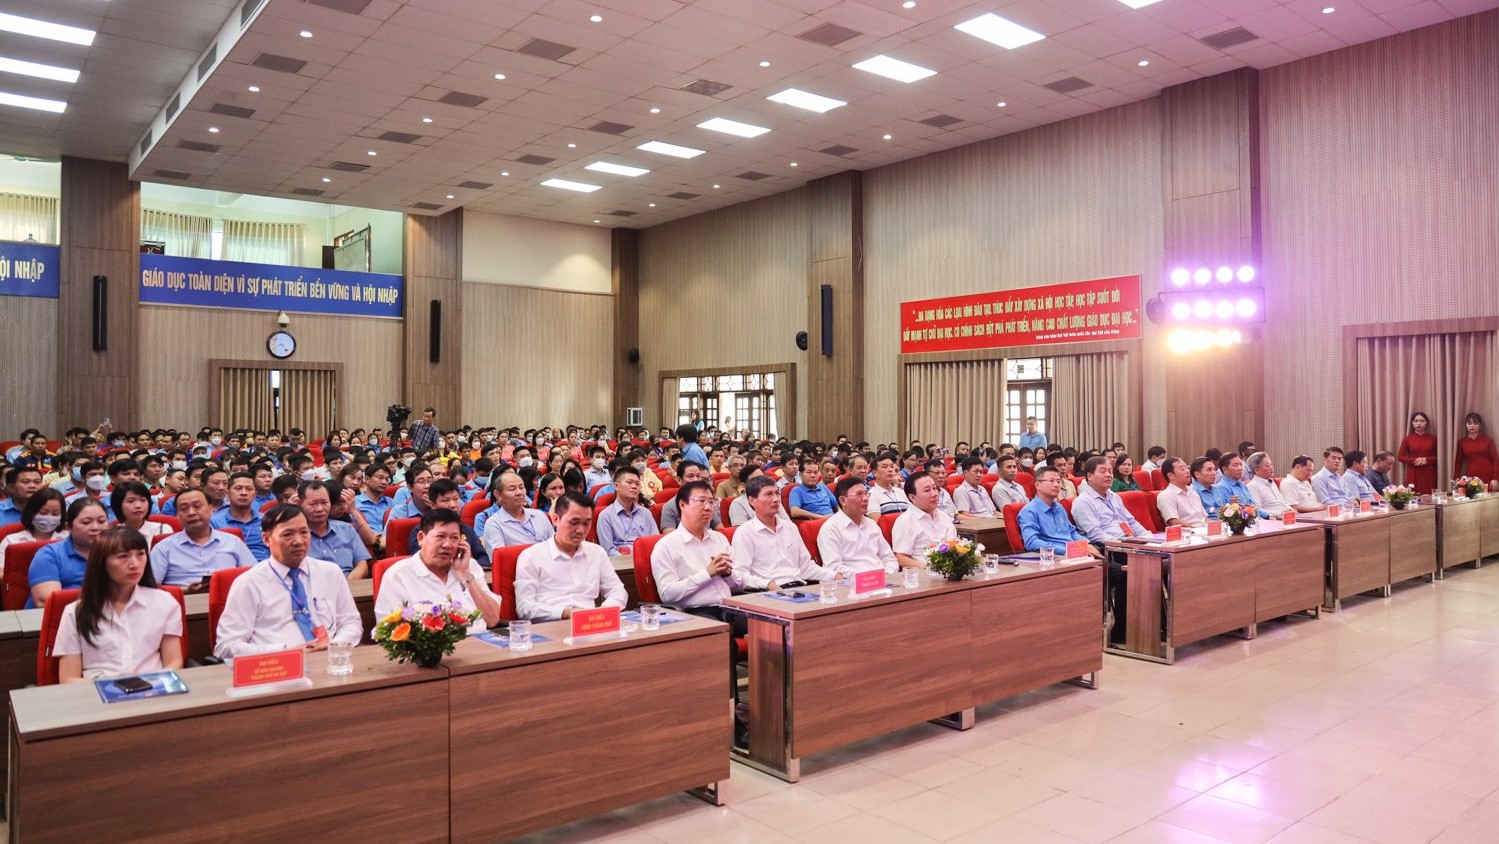 Hội thi thợ giỏi Thành phố Hà Nội năm 2023 dự kiến tổ chức vào tháng 8/2023 tại Trường Đại học Công nghiệp Hà Nội